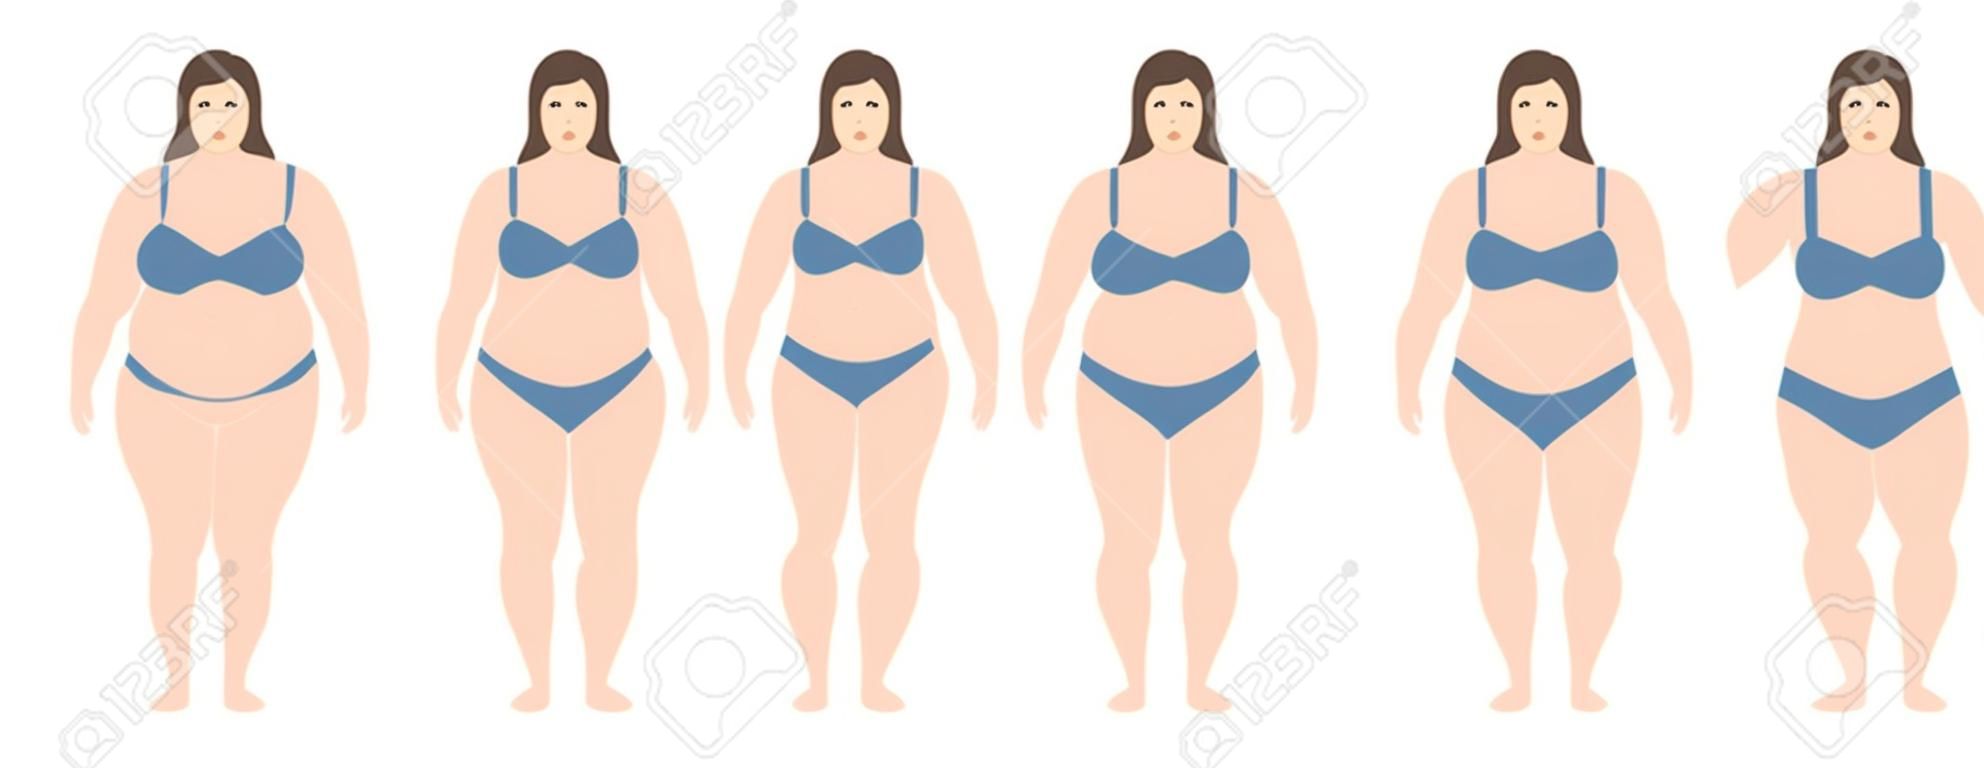 Ilustracja wektorowa kobiet o różnej wadze od anoreksji do skrajnie otyłych. Wskaźnik masy ciała, koncepcja utraty wagi.